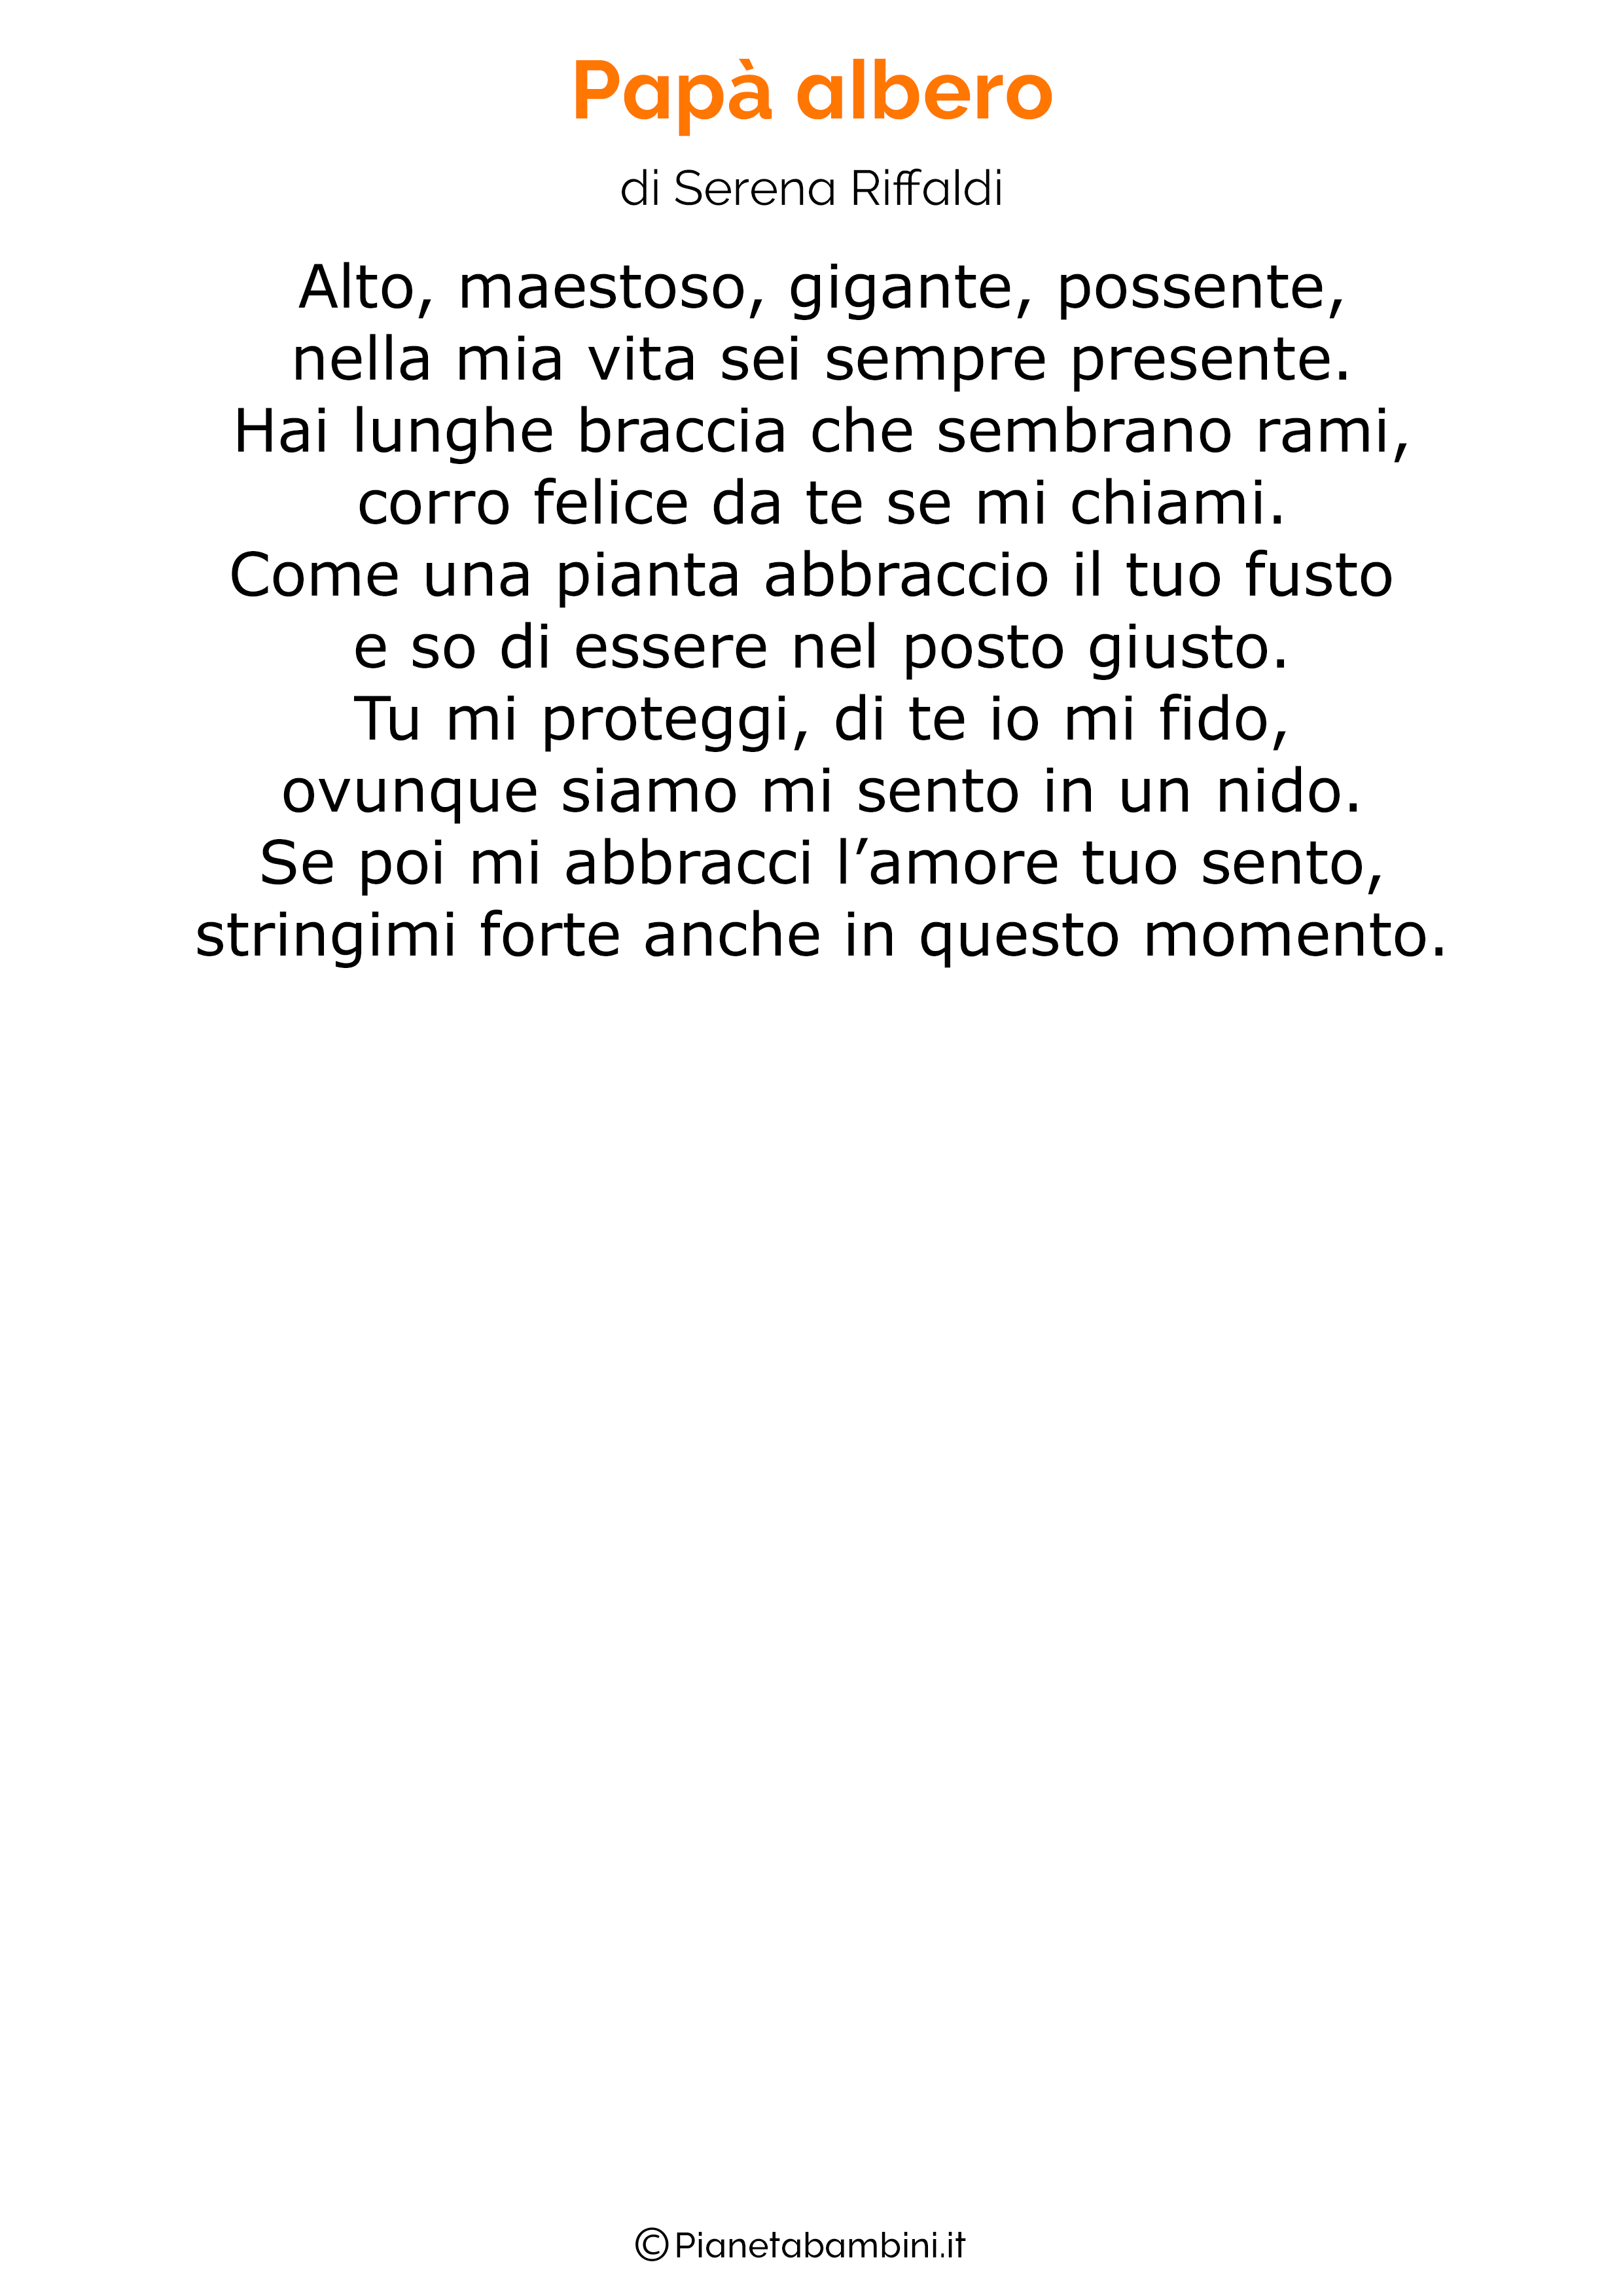 Poesia per la festa del papa per bambini 23